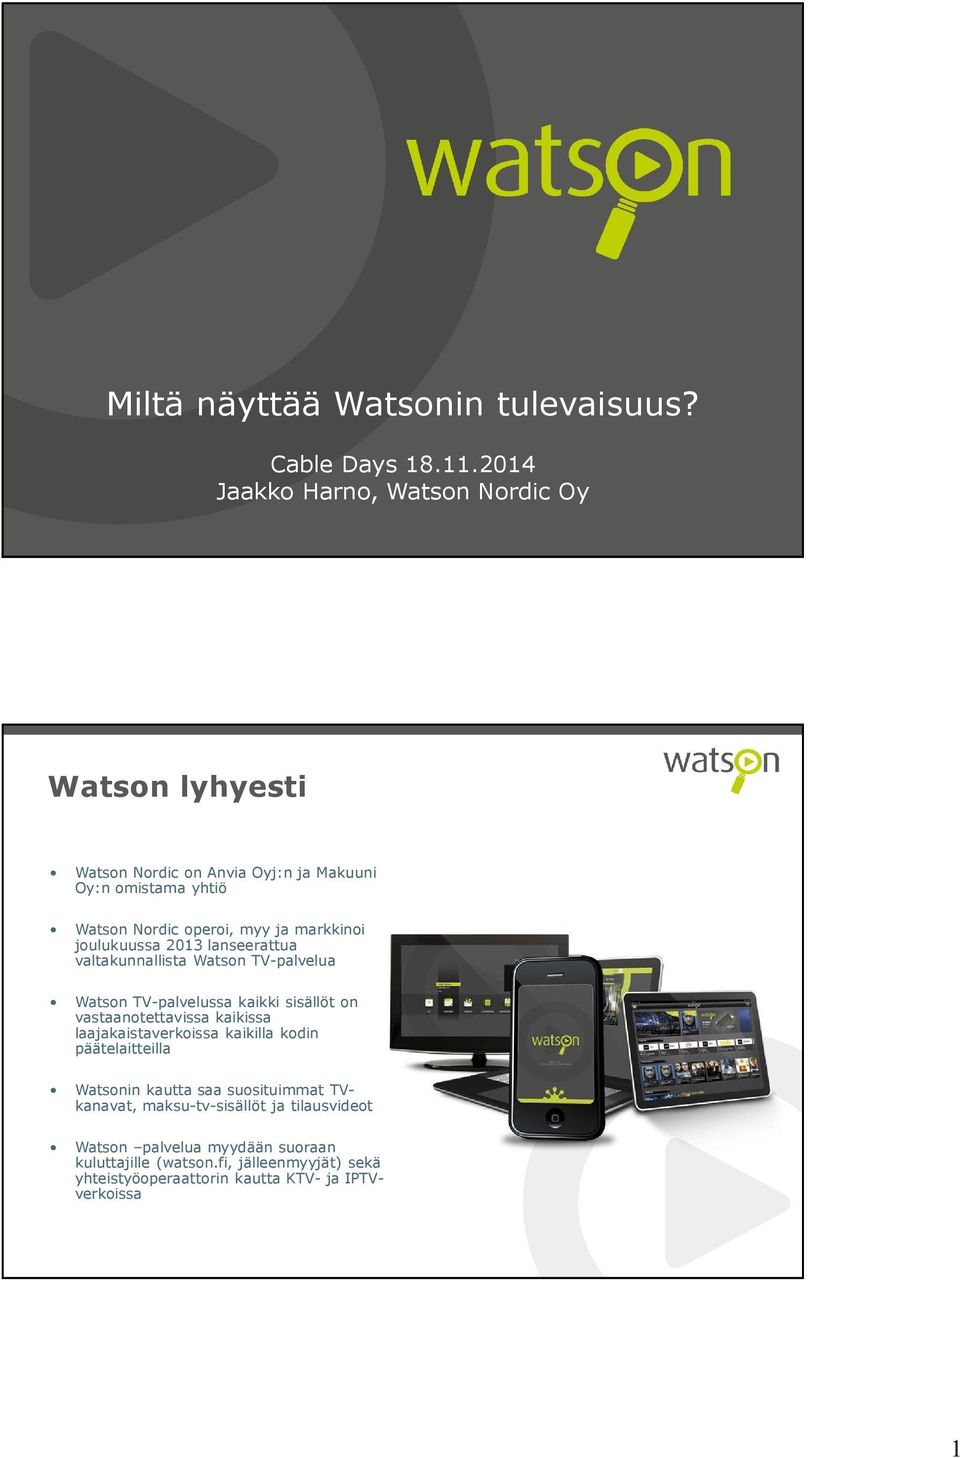 markkinoi joulukuussa 2013 lanseerattua valtakunnallista Watson TV-palvelua Watson TV-palvelussa kaikki sisällöt on vastaanotettavissa kaikissa